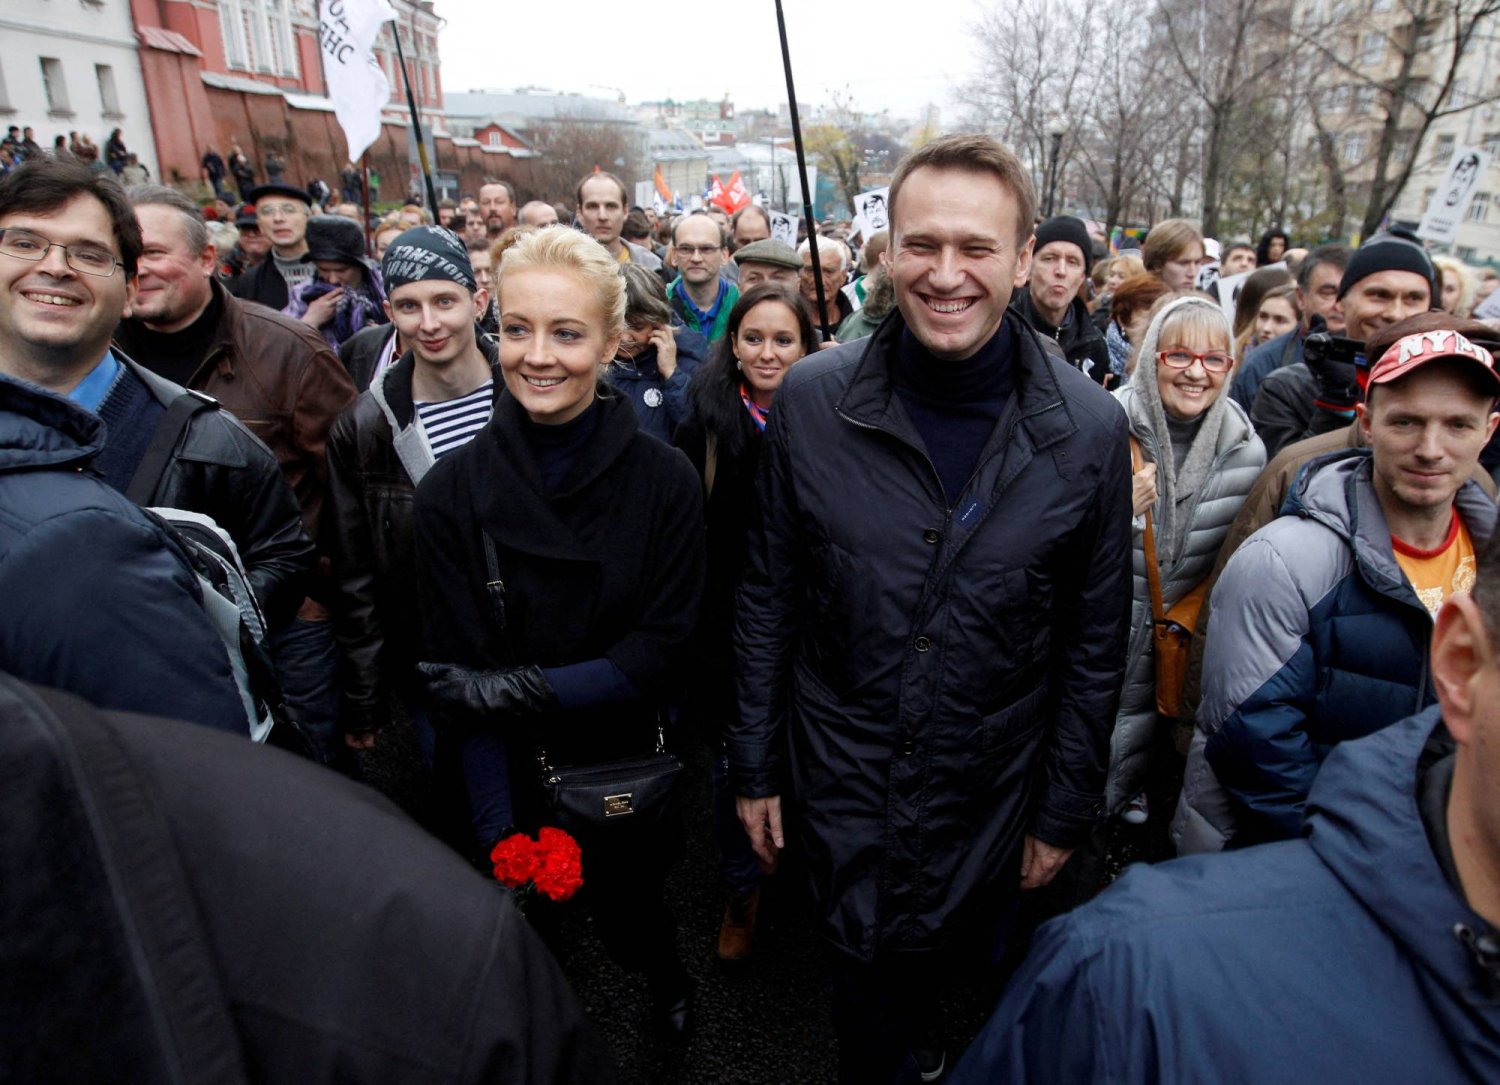 يوليا نافالني رفقة زوجها الراحل أليكسي نافالني خلال مسيرة معارضة في موسكو عام 2013 (رويترز)